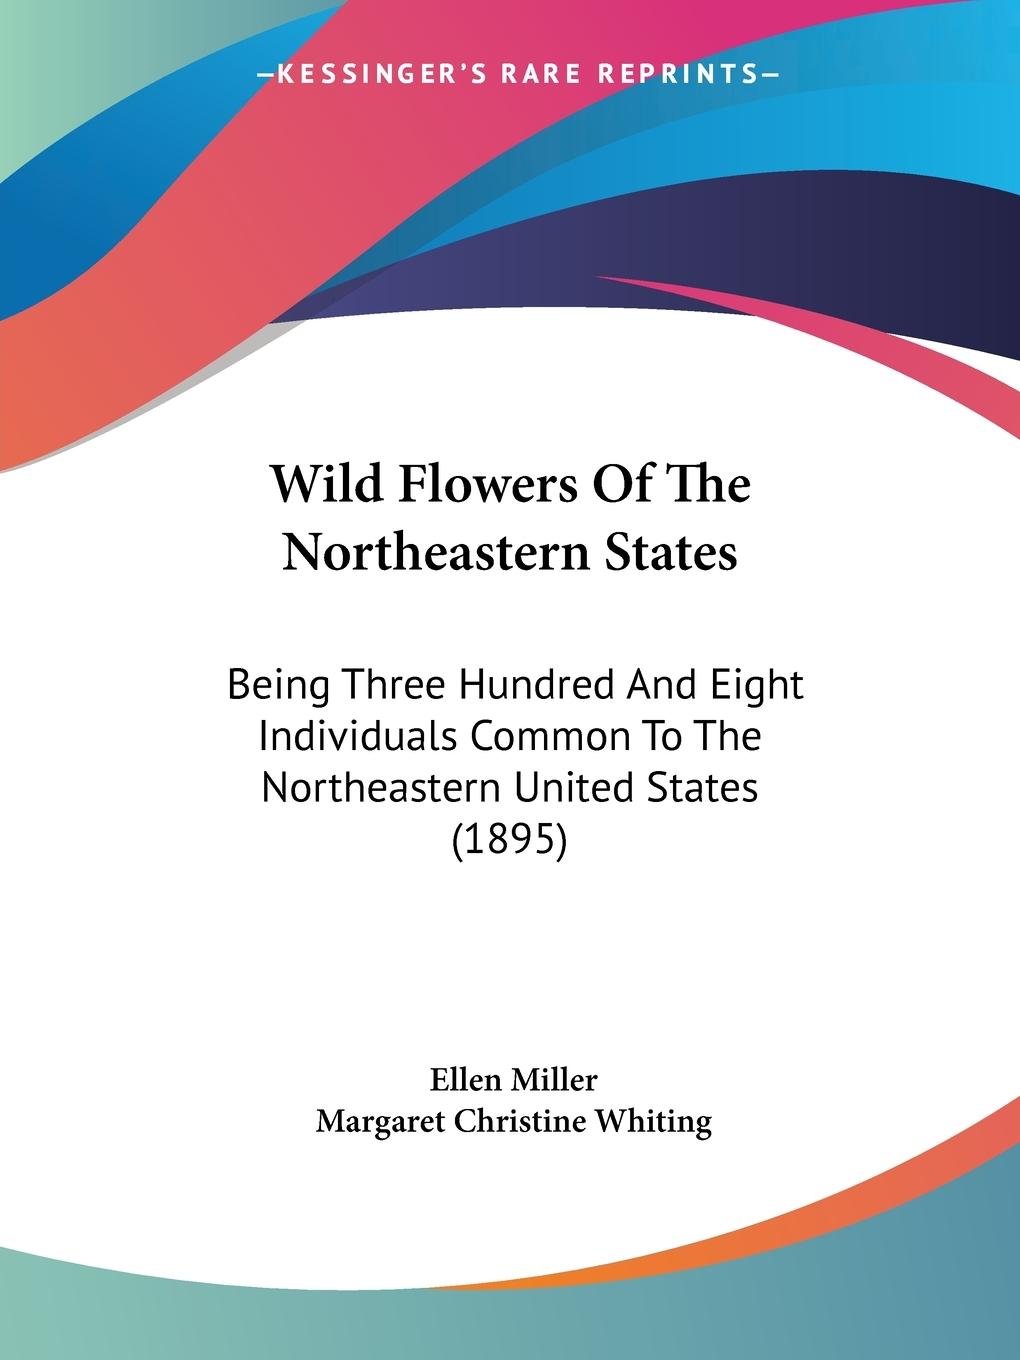 Wild Flowers Of The Northeastern States - Miller, Ellen Whiting, Margaret Christine